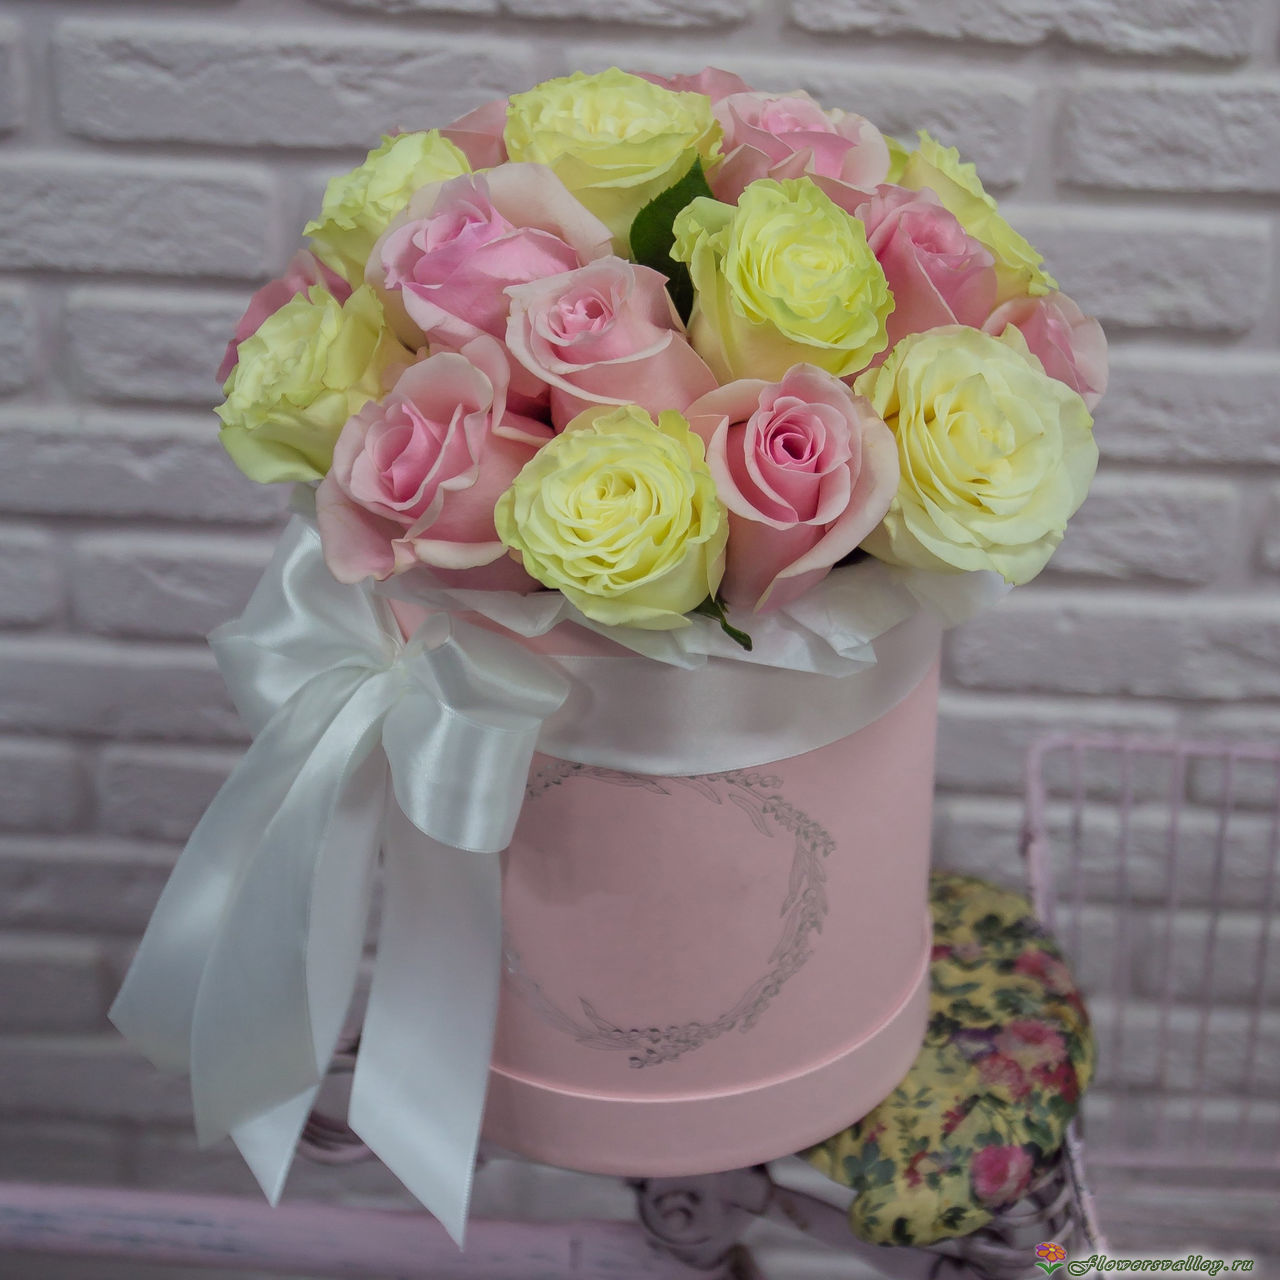 Шляпная коробка с белой и розовой розой  25 шт.